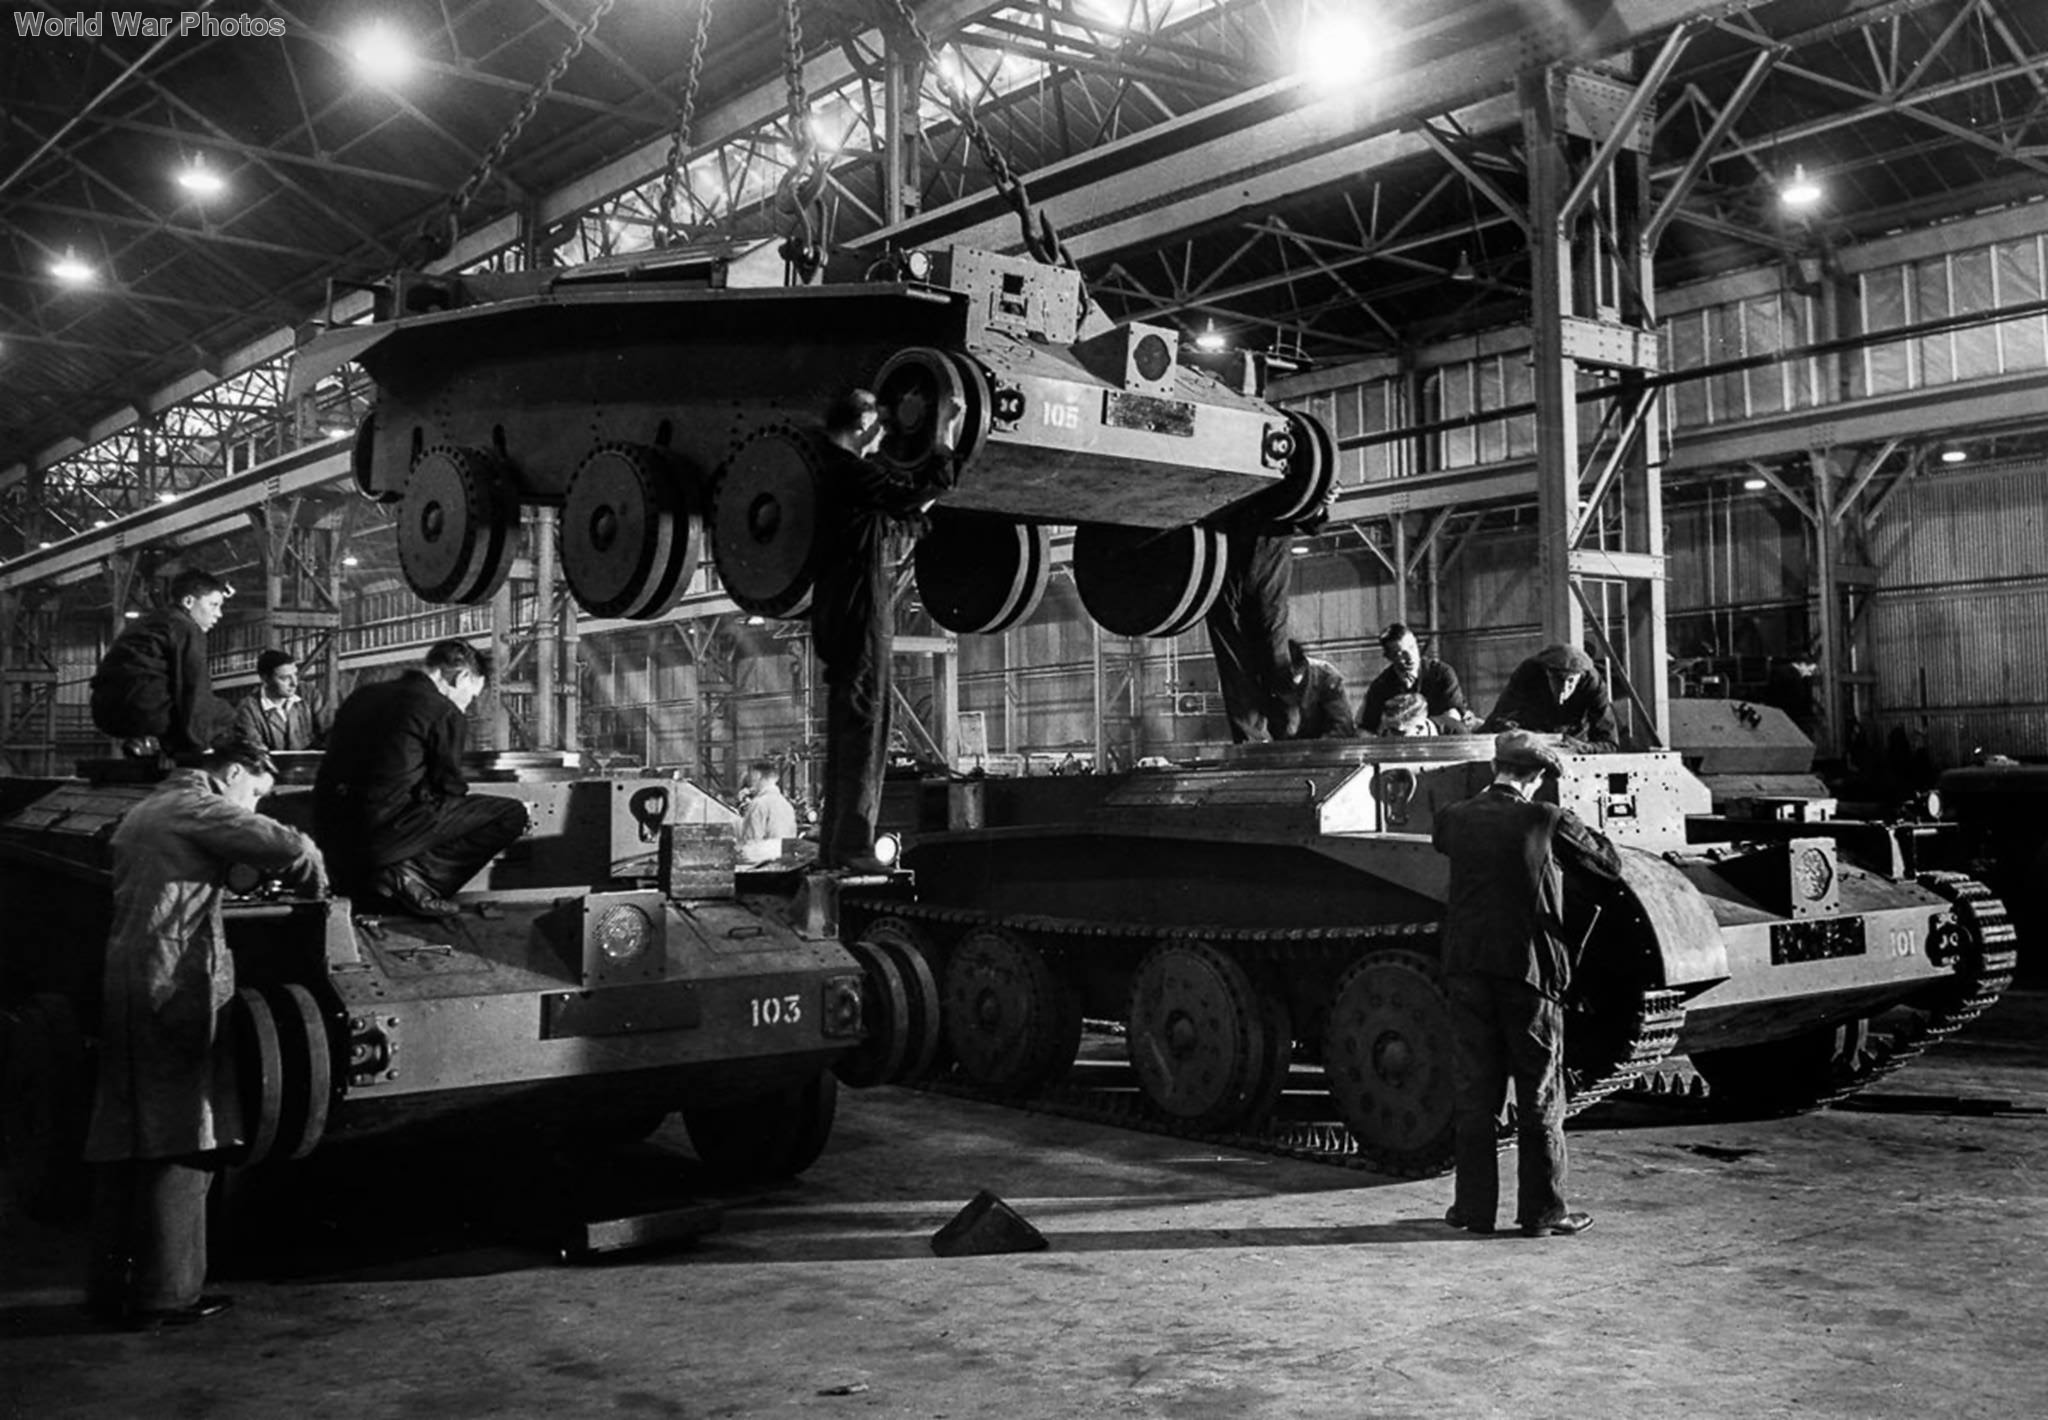 Завод по немецки. Танковый завод 1941 Germany. Немецкий танковый завод 1942. Военные заводы Германии второй мировой войны.